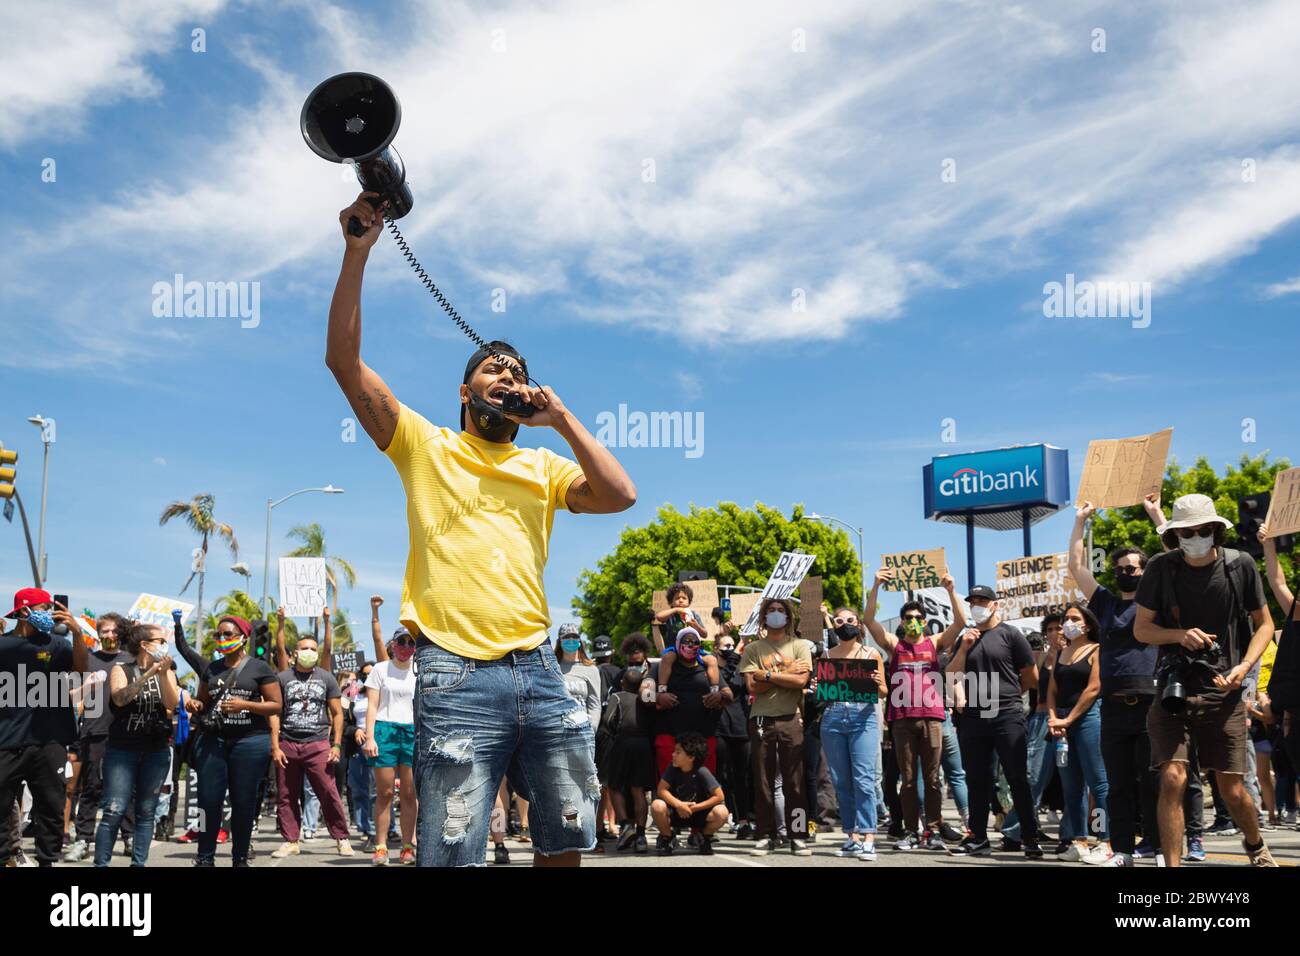 Attivista con corno a Black Lives protesta per l'uccisione di George Floyd: Fairfax District, Los Angeles, CA, USA - 30 maggio 2020 Foto Stock